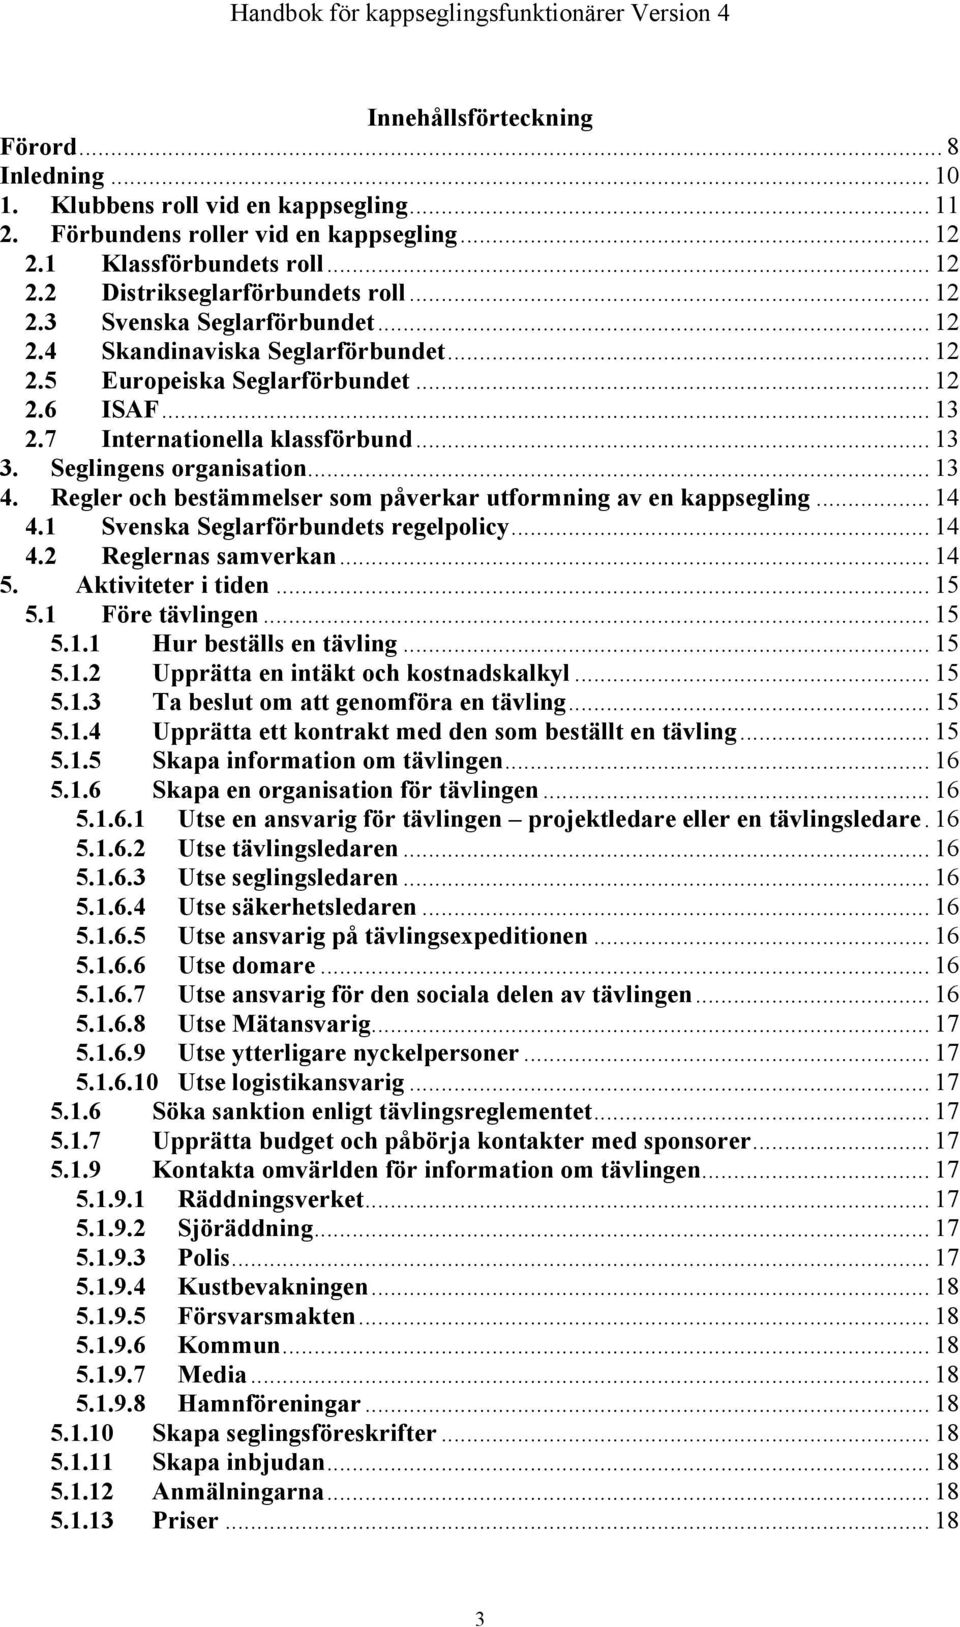 .. 13 4. Regler och bestämmelser som påverkar utformning av en kappsegling... 14 4.1 Svenska Seglarförbundets regelpolicy... 14 4.2 Reglernas samverkan... 14 5. Aktiviteter i tiden... 15 5.